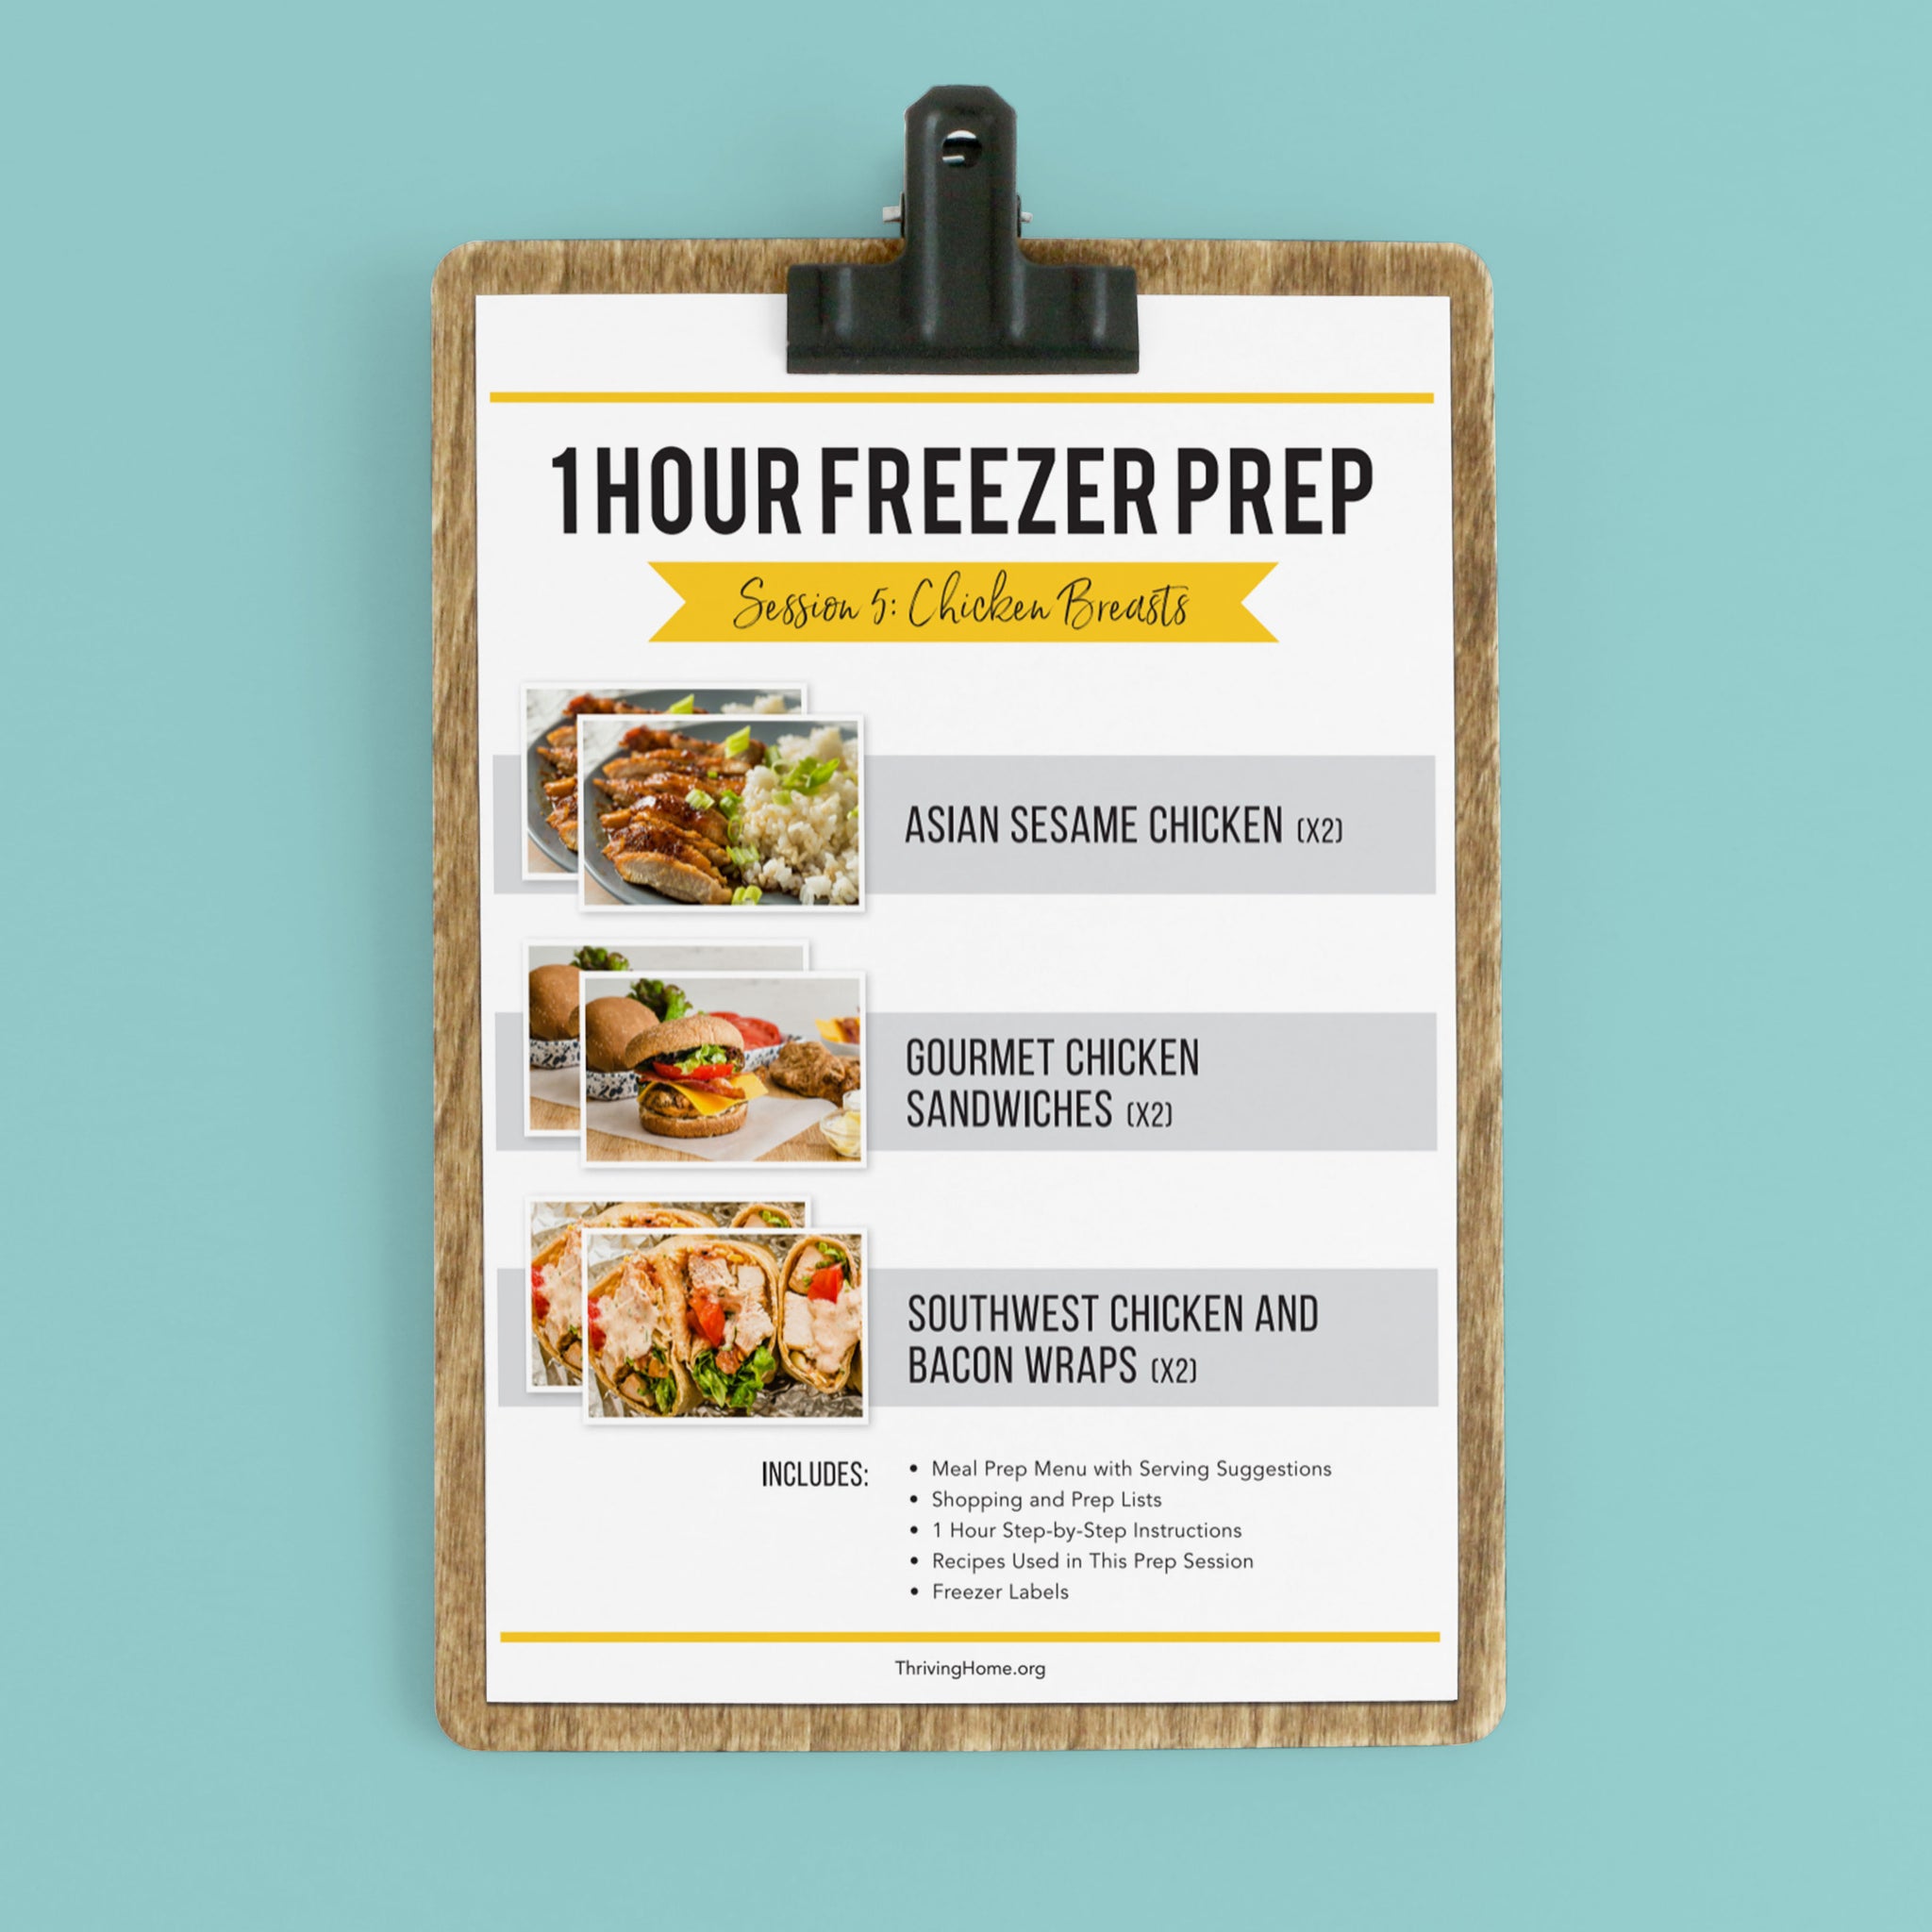 1 Hour Freezer Prep: Session 5